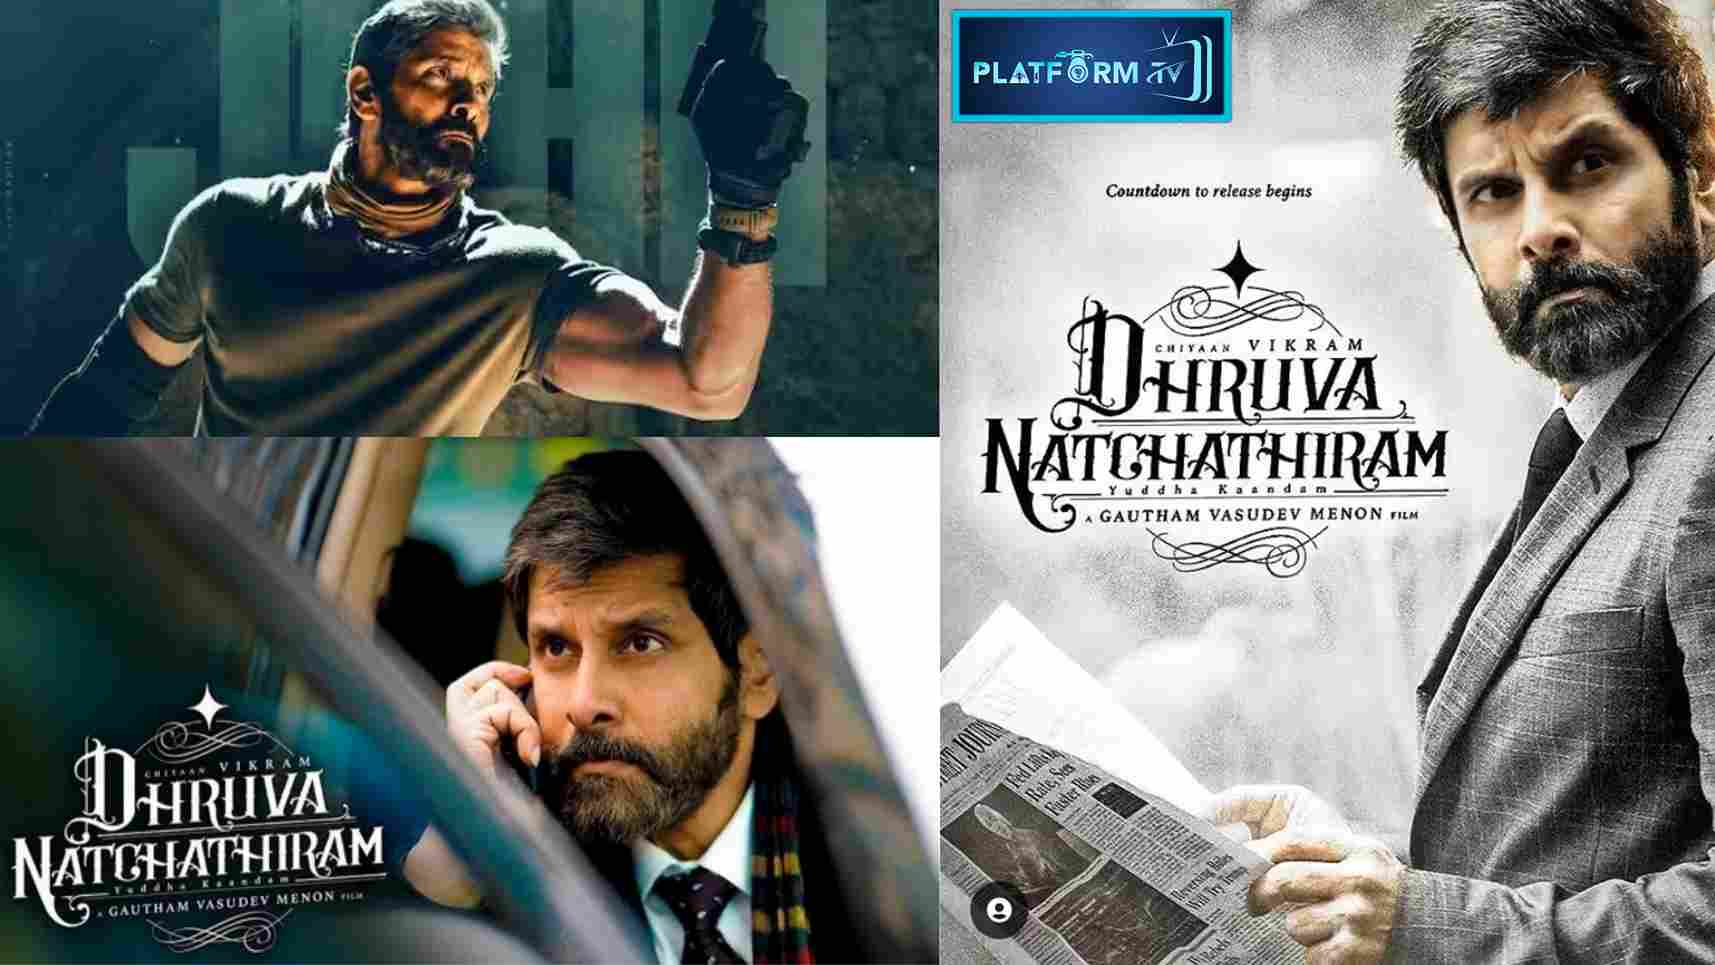 Dhruva Natchathiram Release Date - Platform Tamil